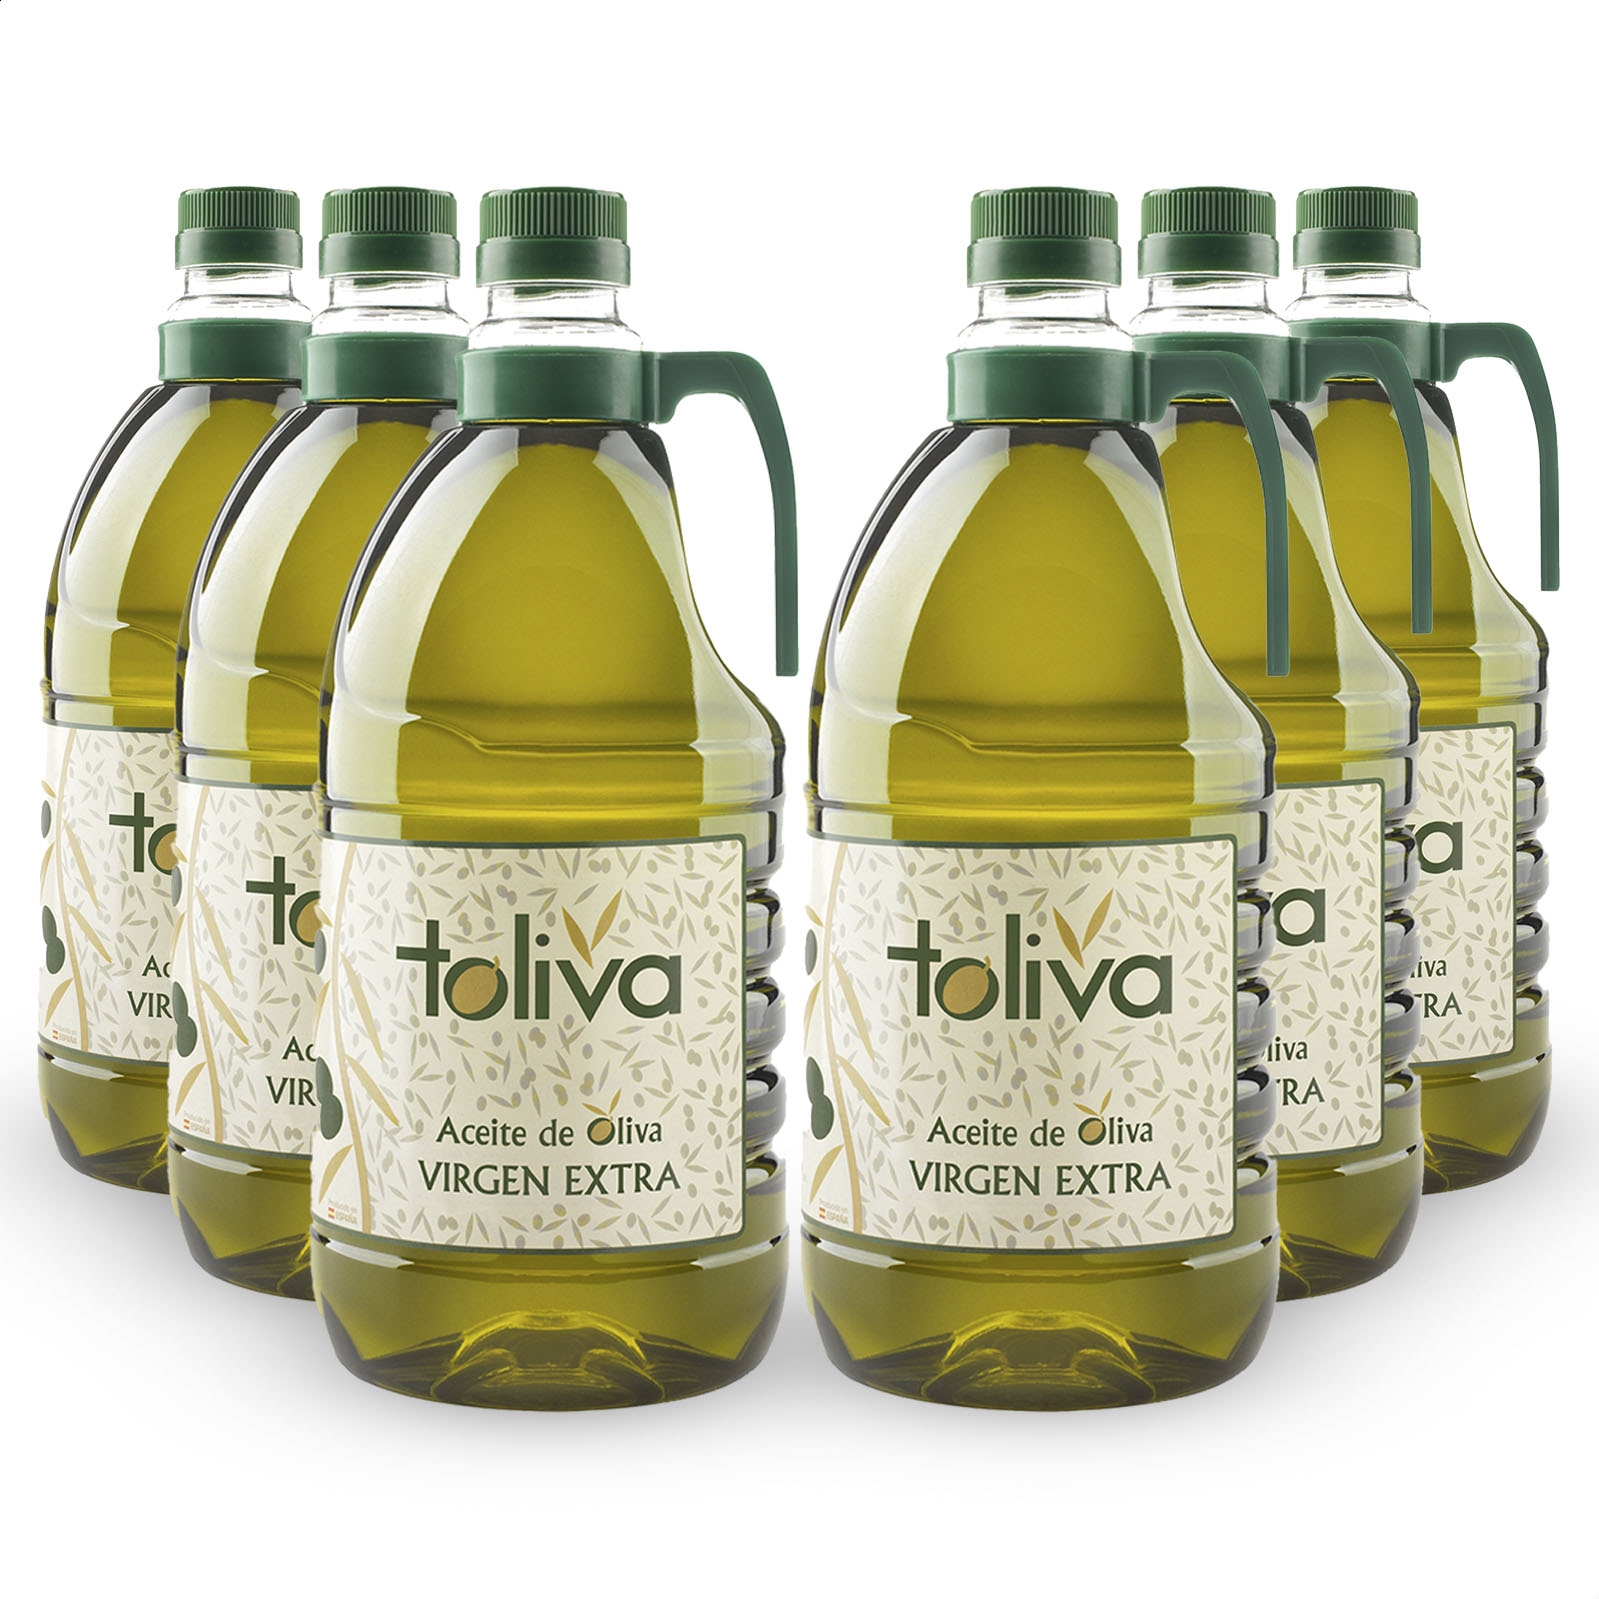 Toliva - Aceite de oliva virgen extra coupage 2L, 6uds